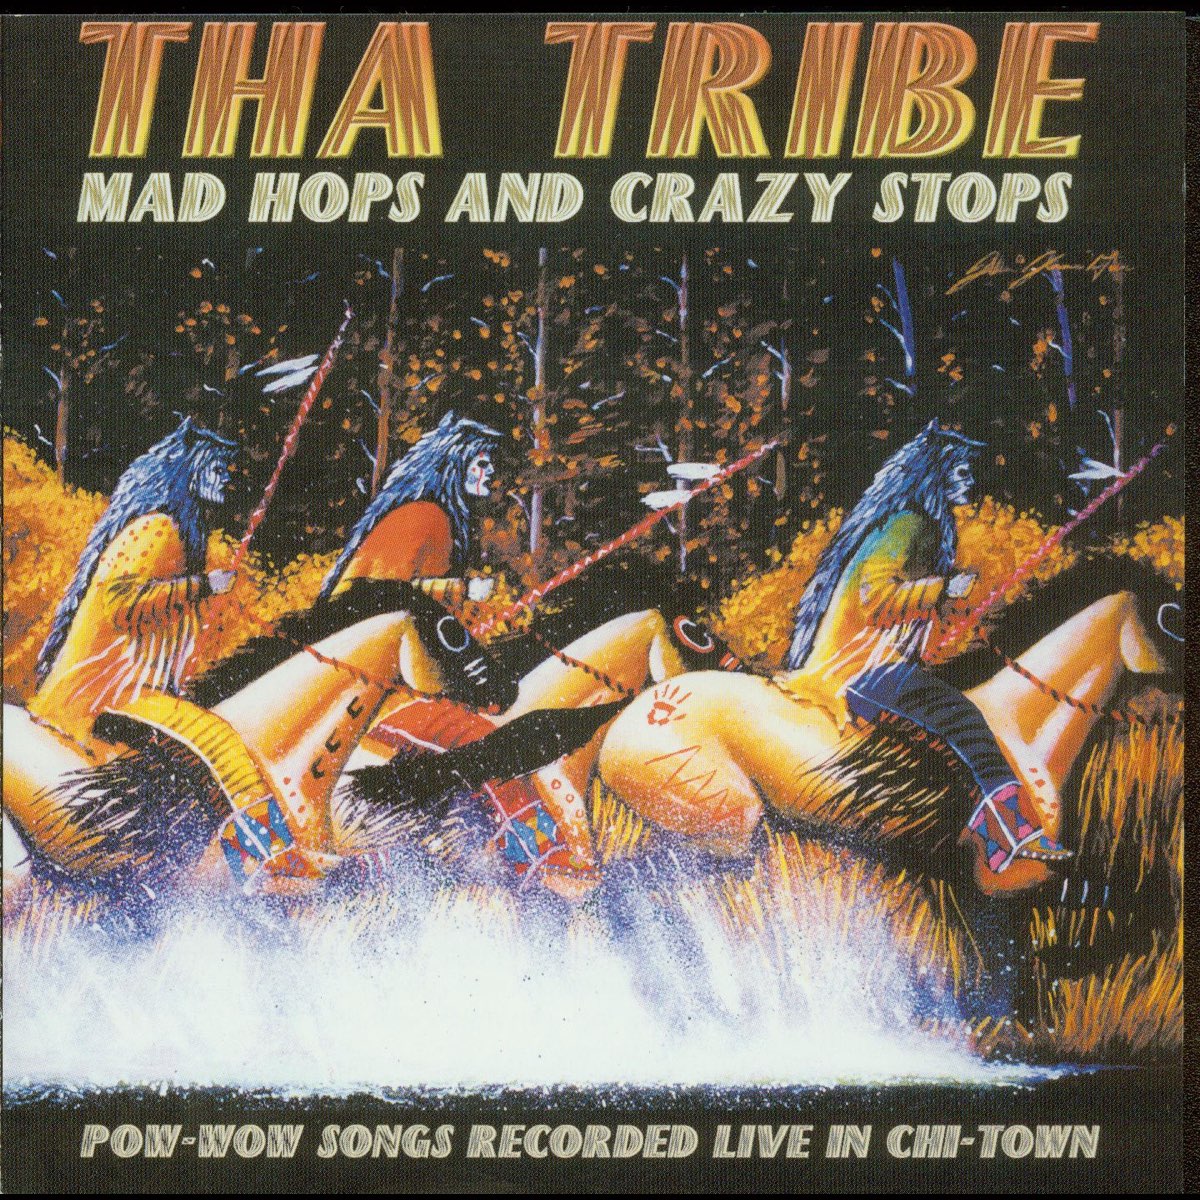 Песня tribes